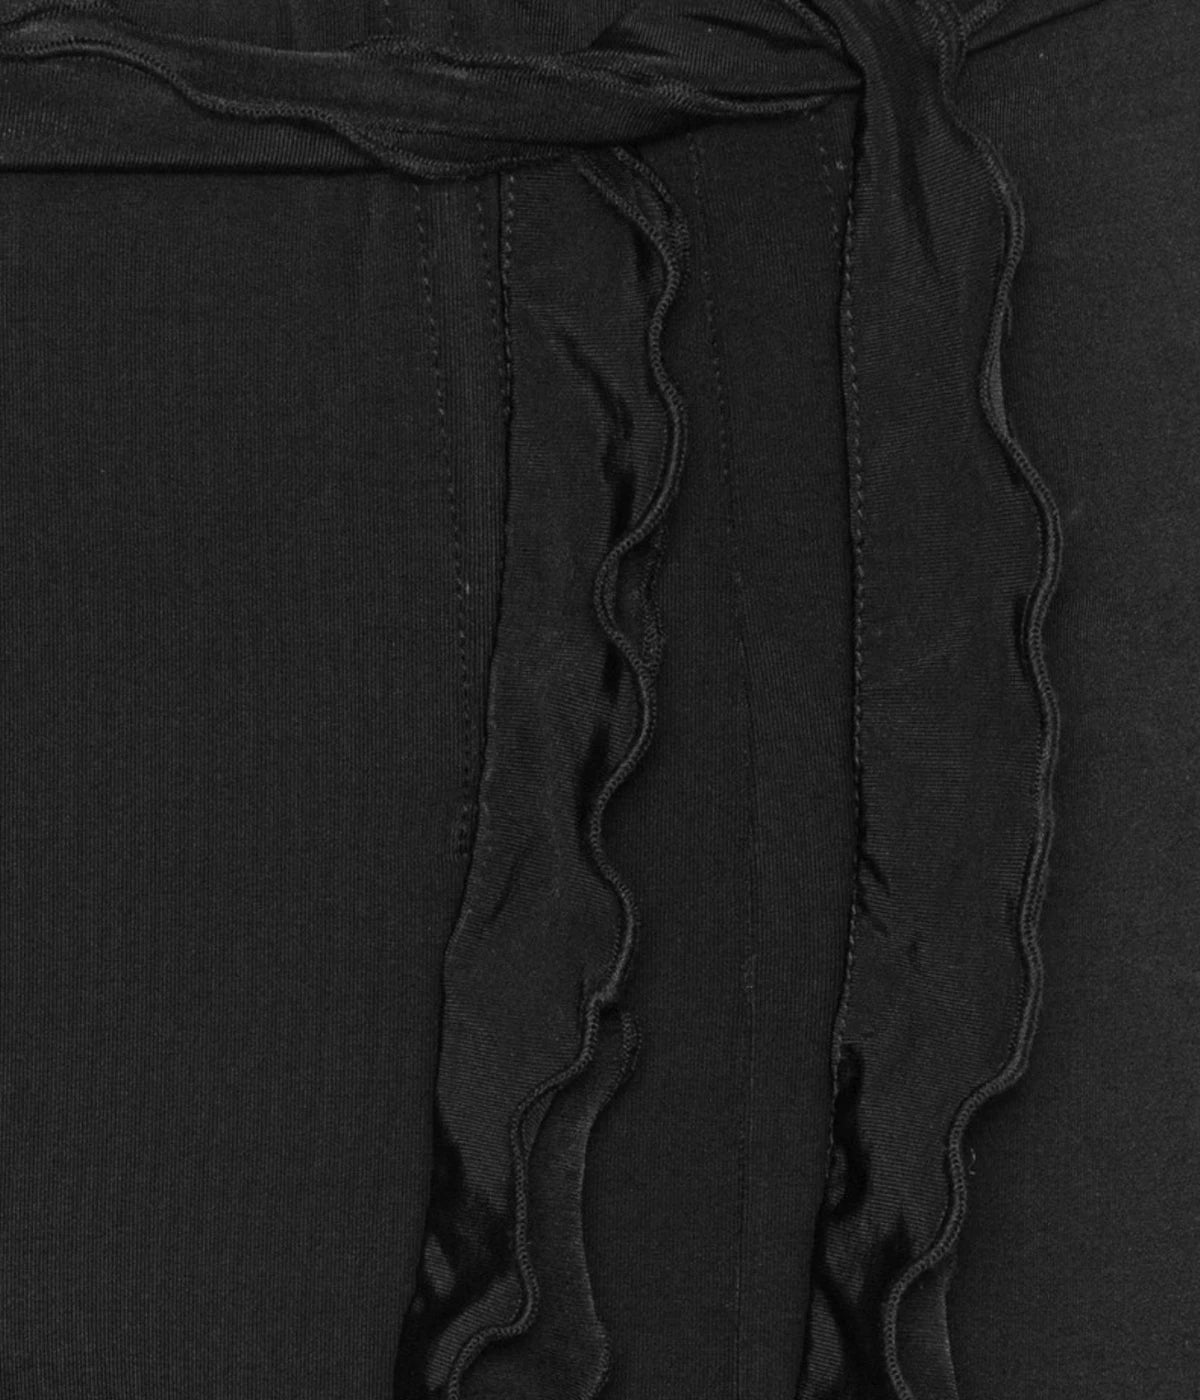 Slinky Flared Pant in Black